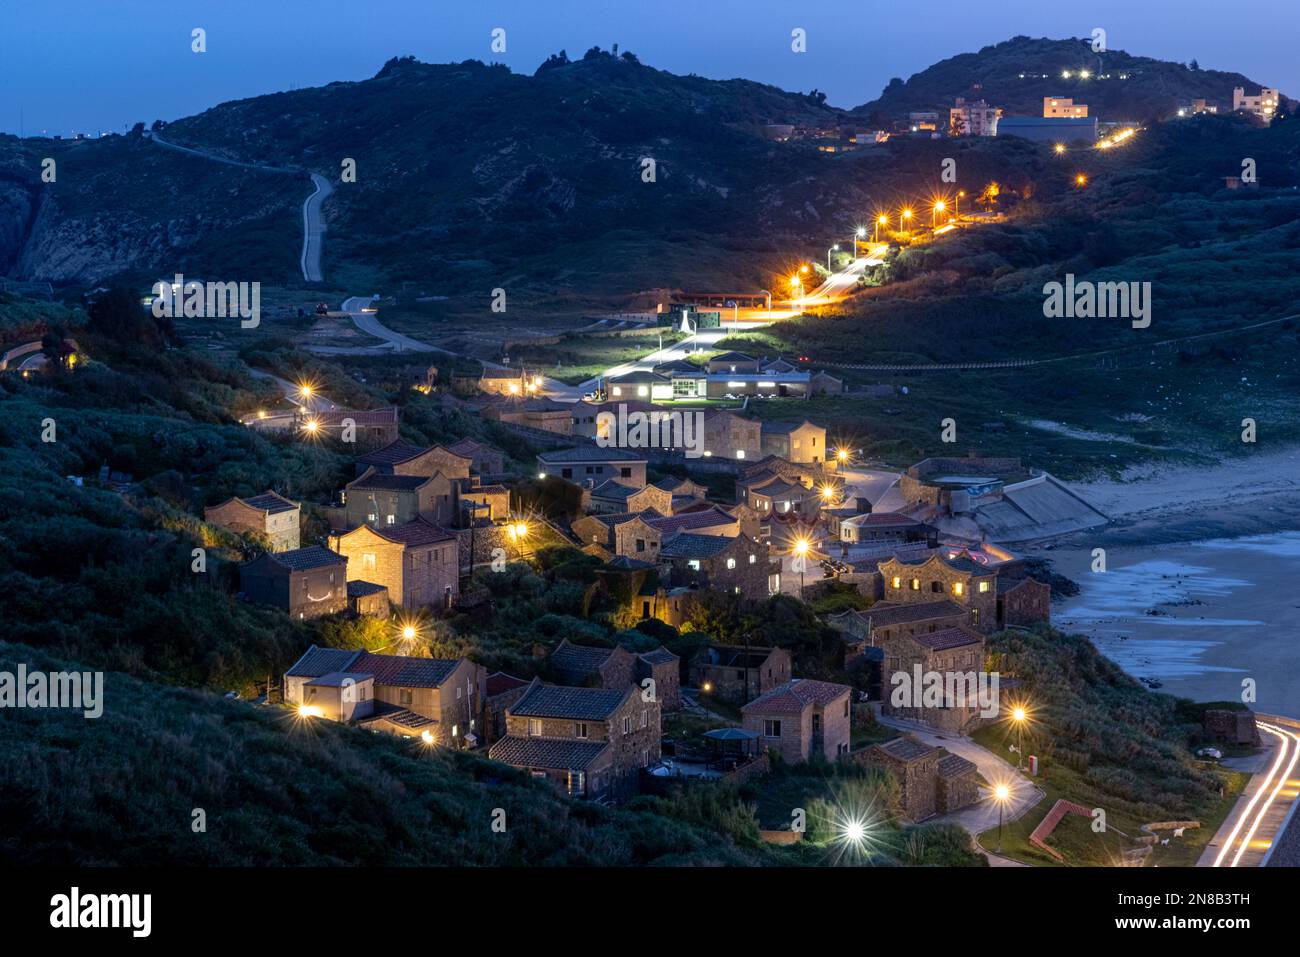 Ein wunderschöner Nachtsicht auf das Dorf Qinbi liegt auf der Beigan Insel Matsu, zwischen dem Berg Qin und dem Berg Bi. Stockfoto